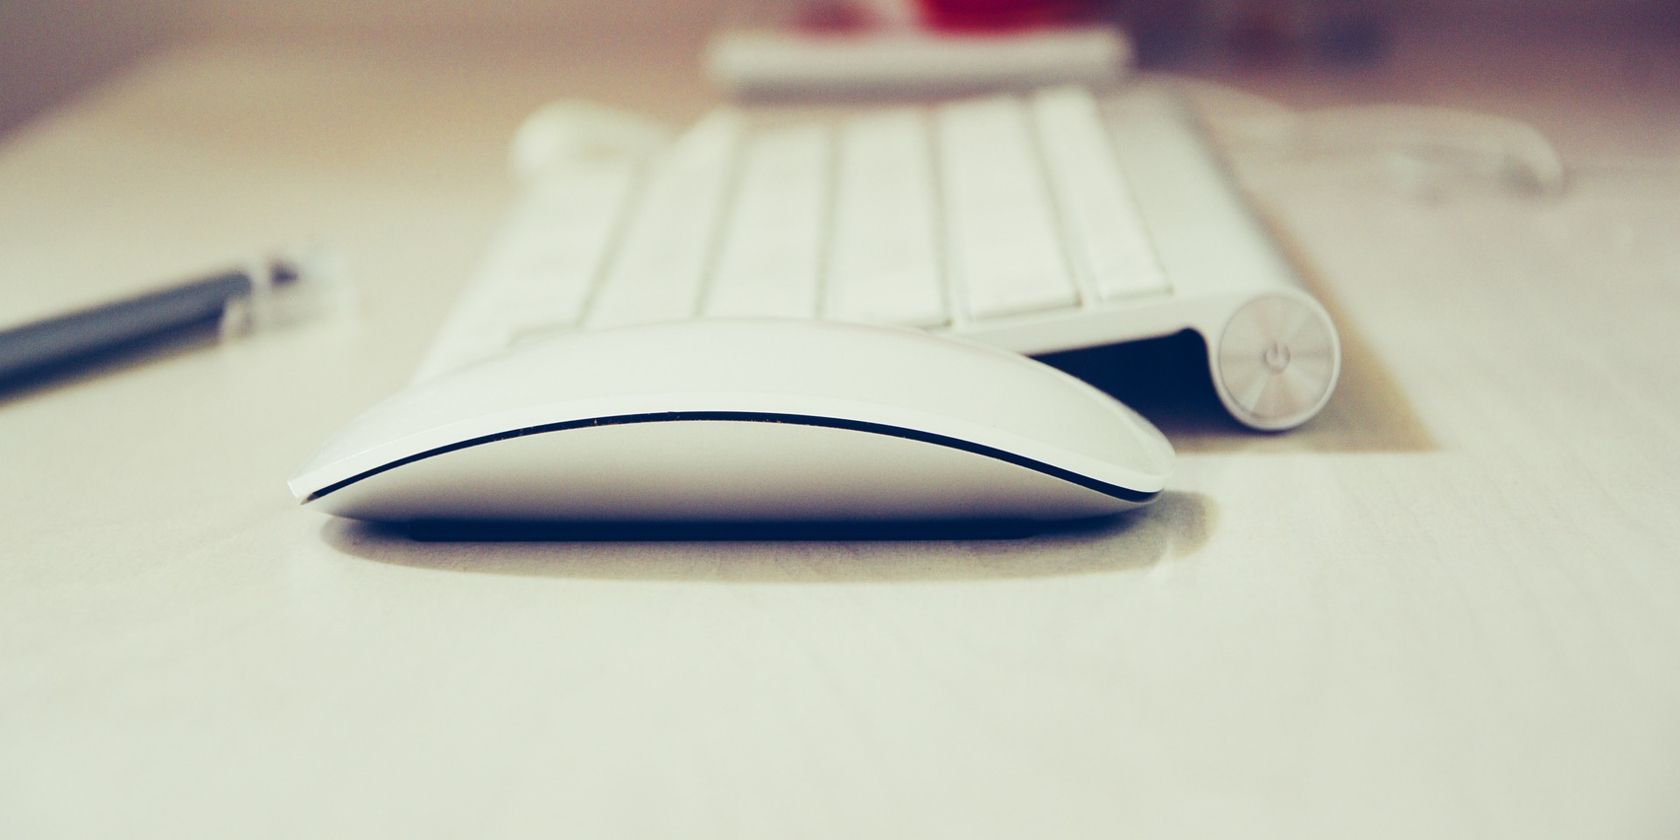 White mouse on desk